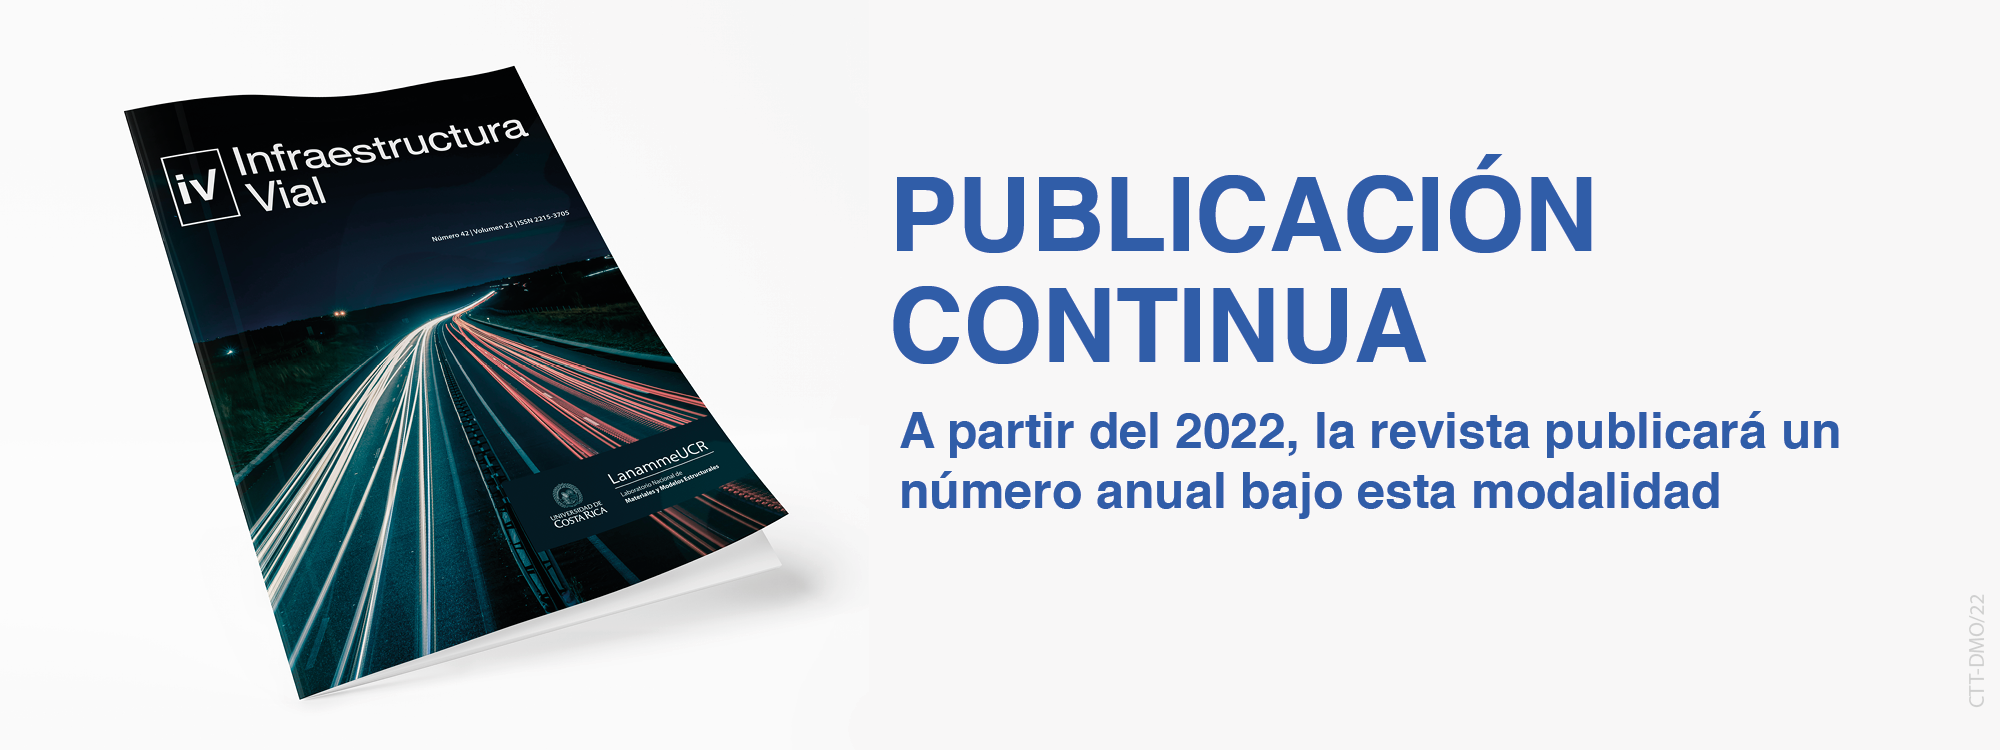 banner_portal_publicacion_continua_2022.png